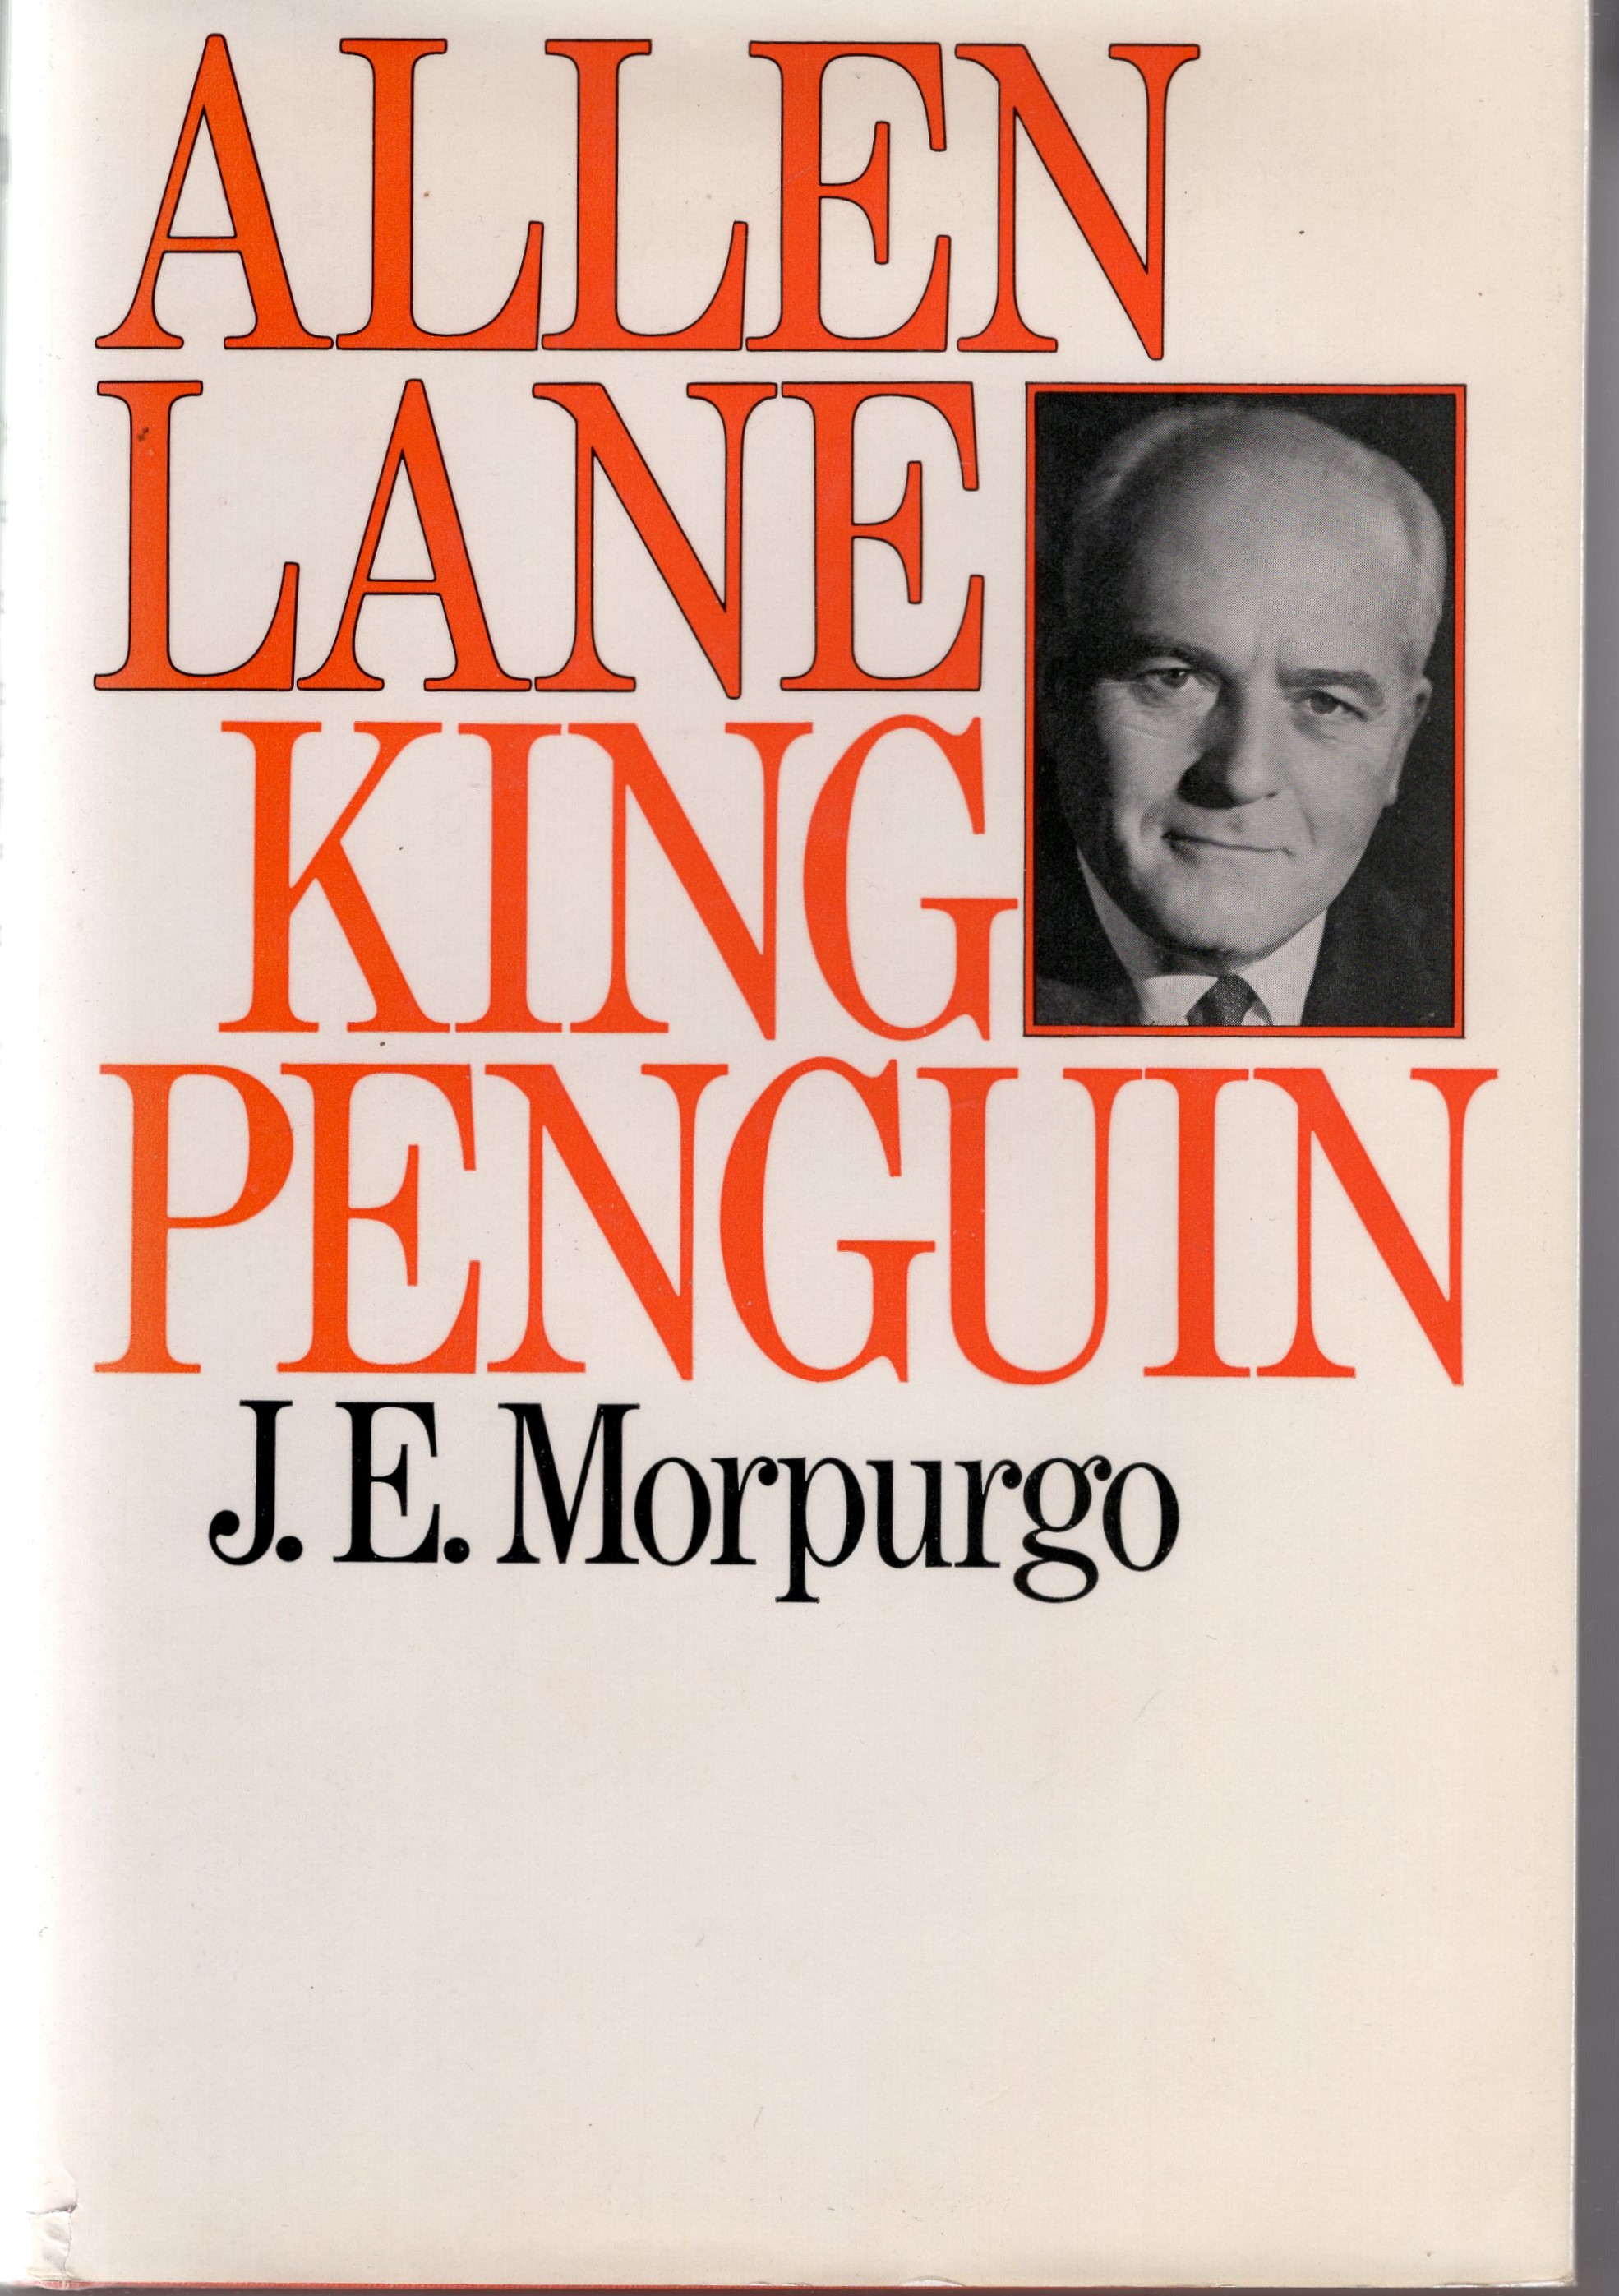 Morpurgo, J. E. - Allen Lane. King Penguin. A biography. 